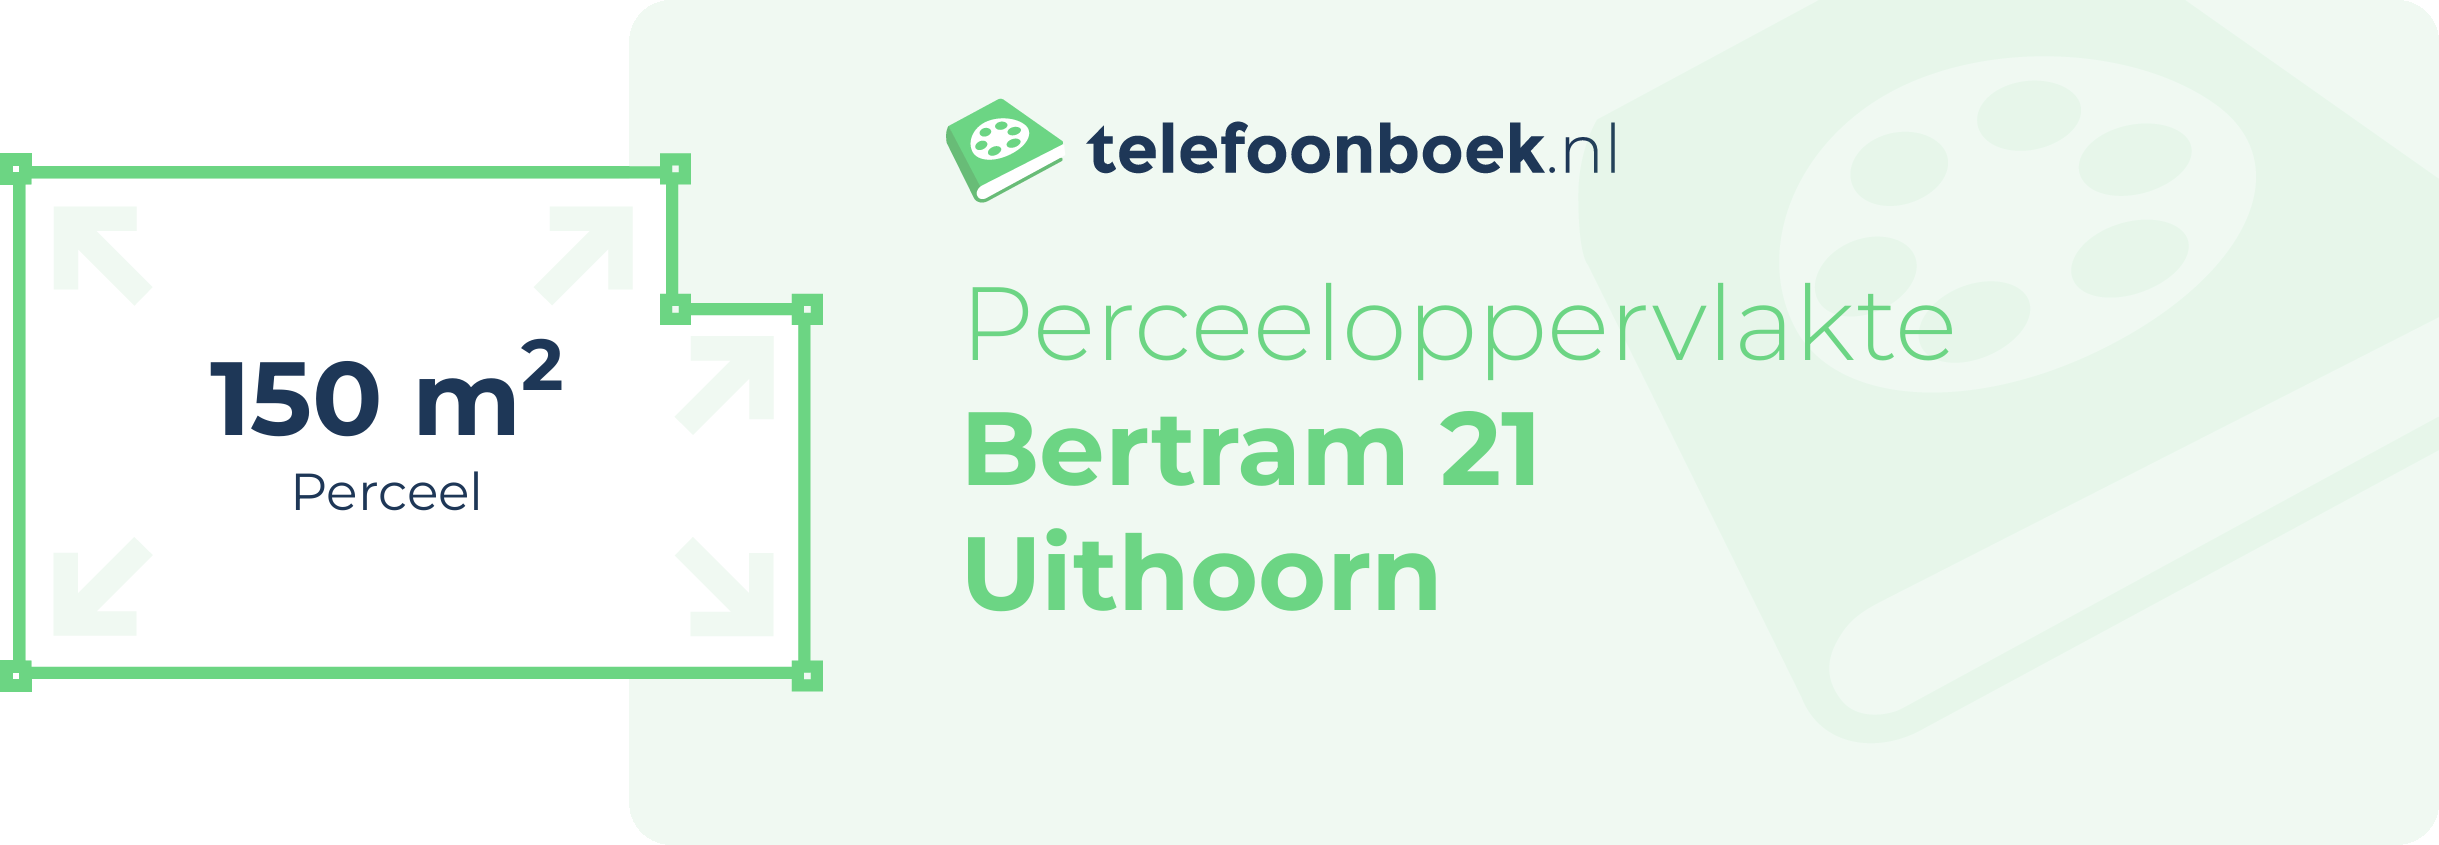 Perceeloppervlakte Bertram 21 Uithoorn